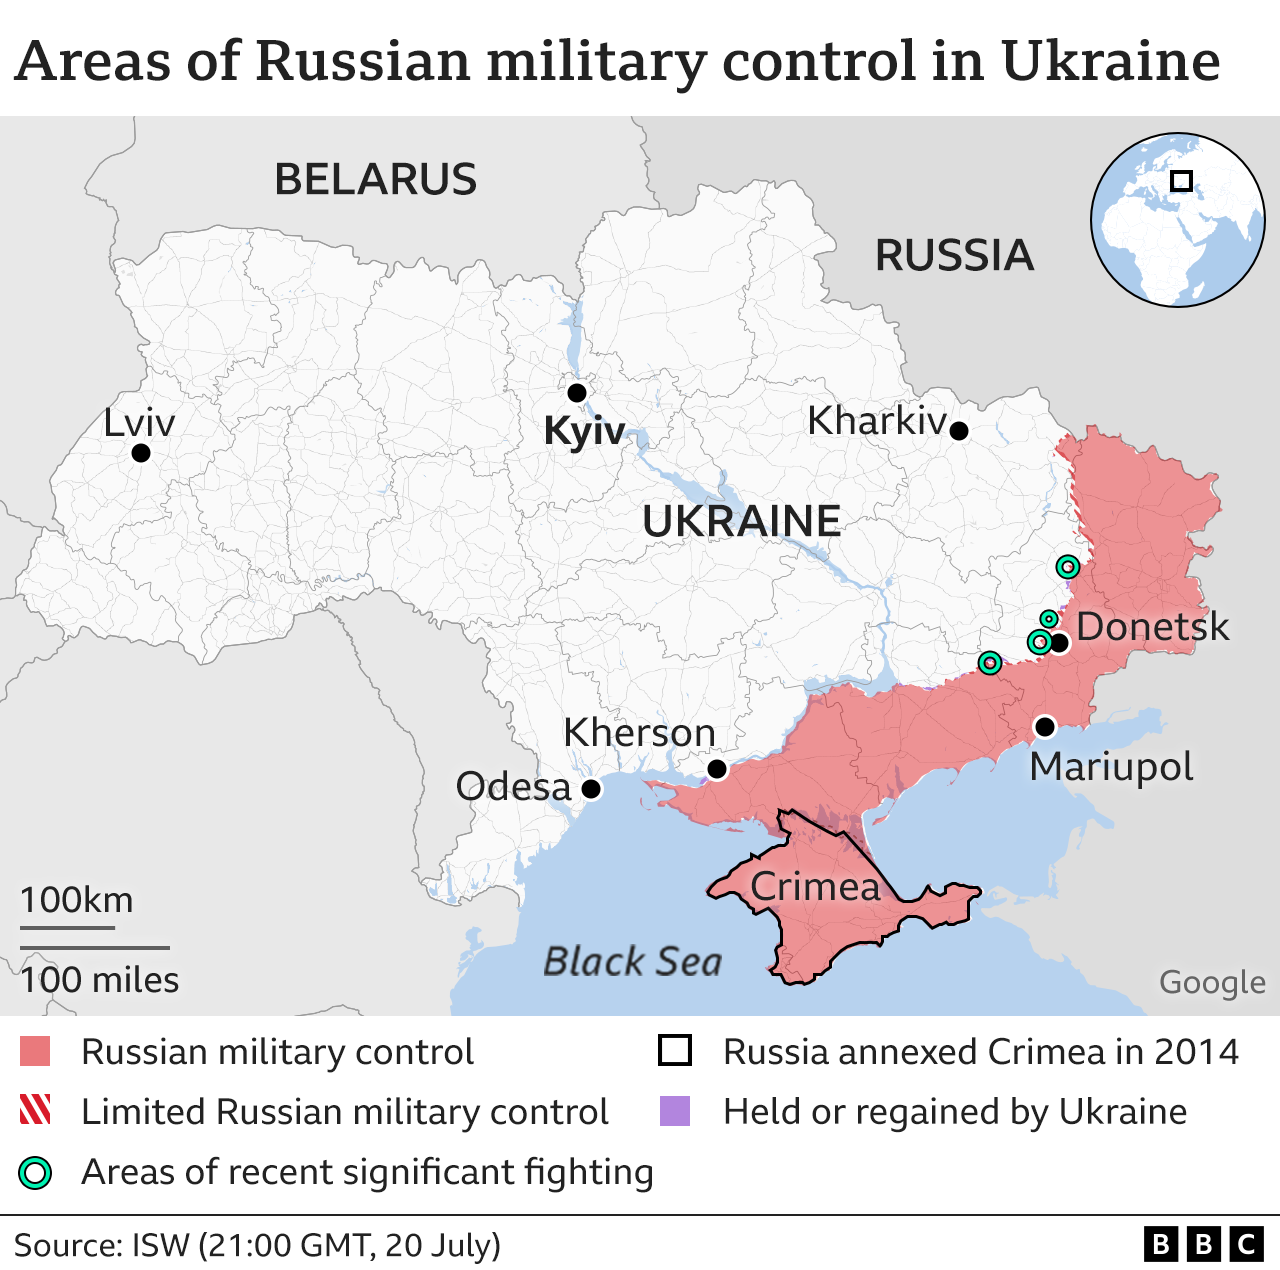 Mapa mostrando toda a Ucrânia e as áreas de combates recentes significativos